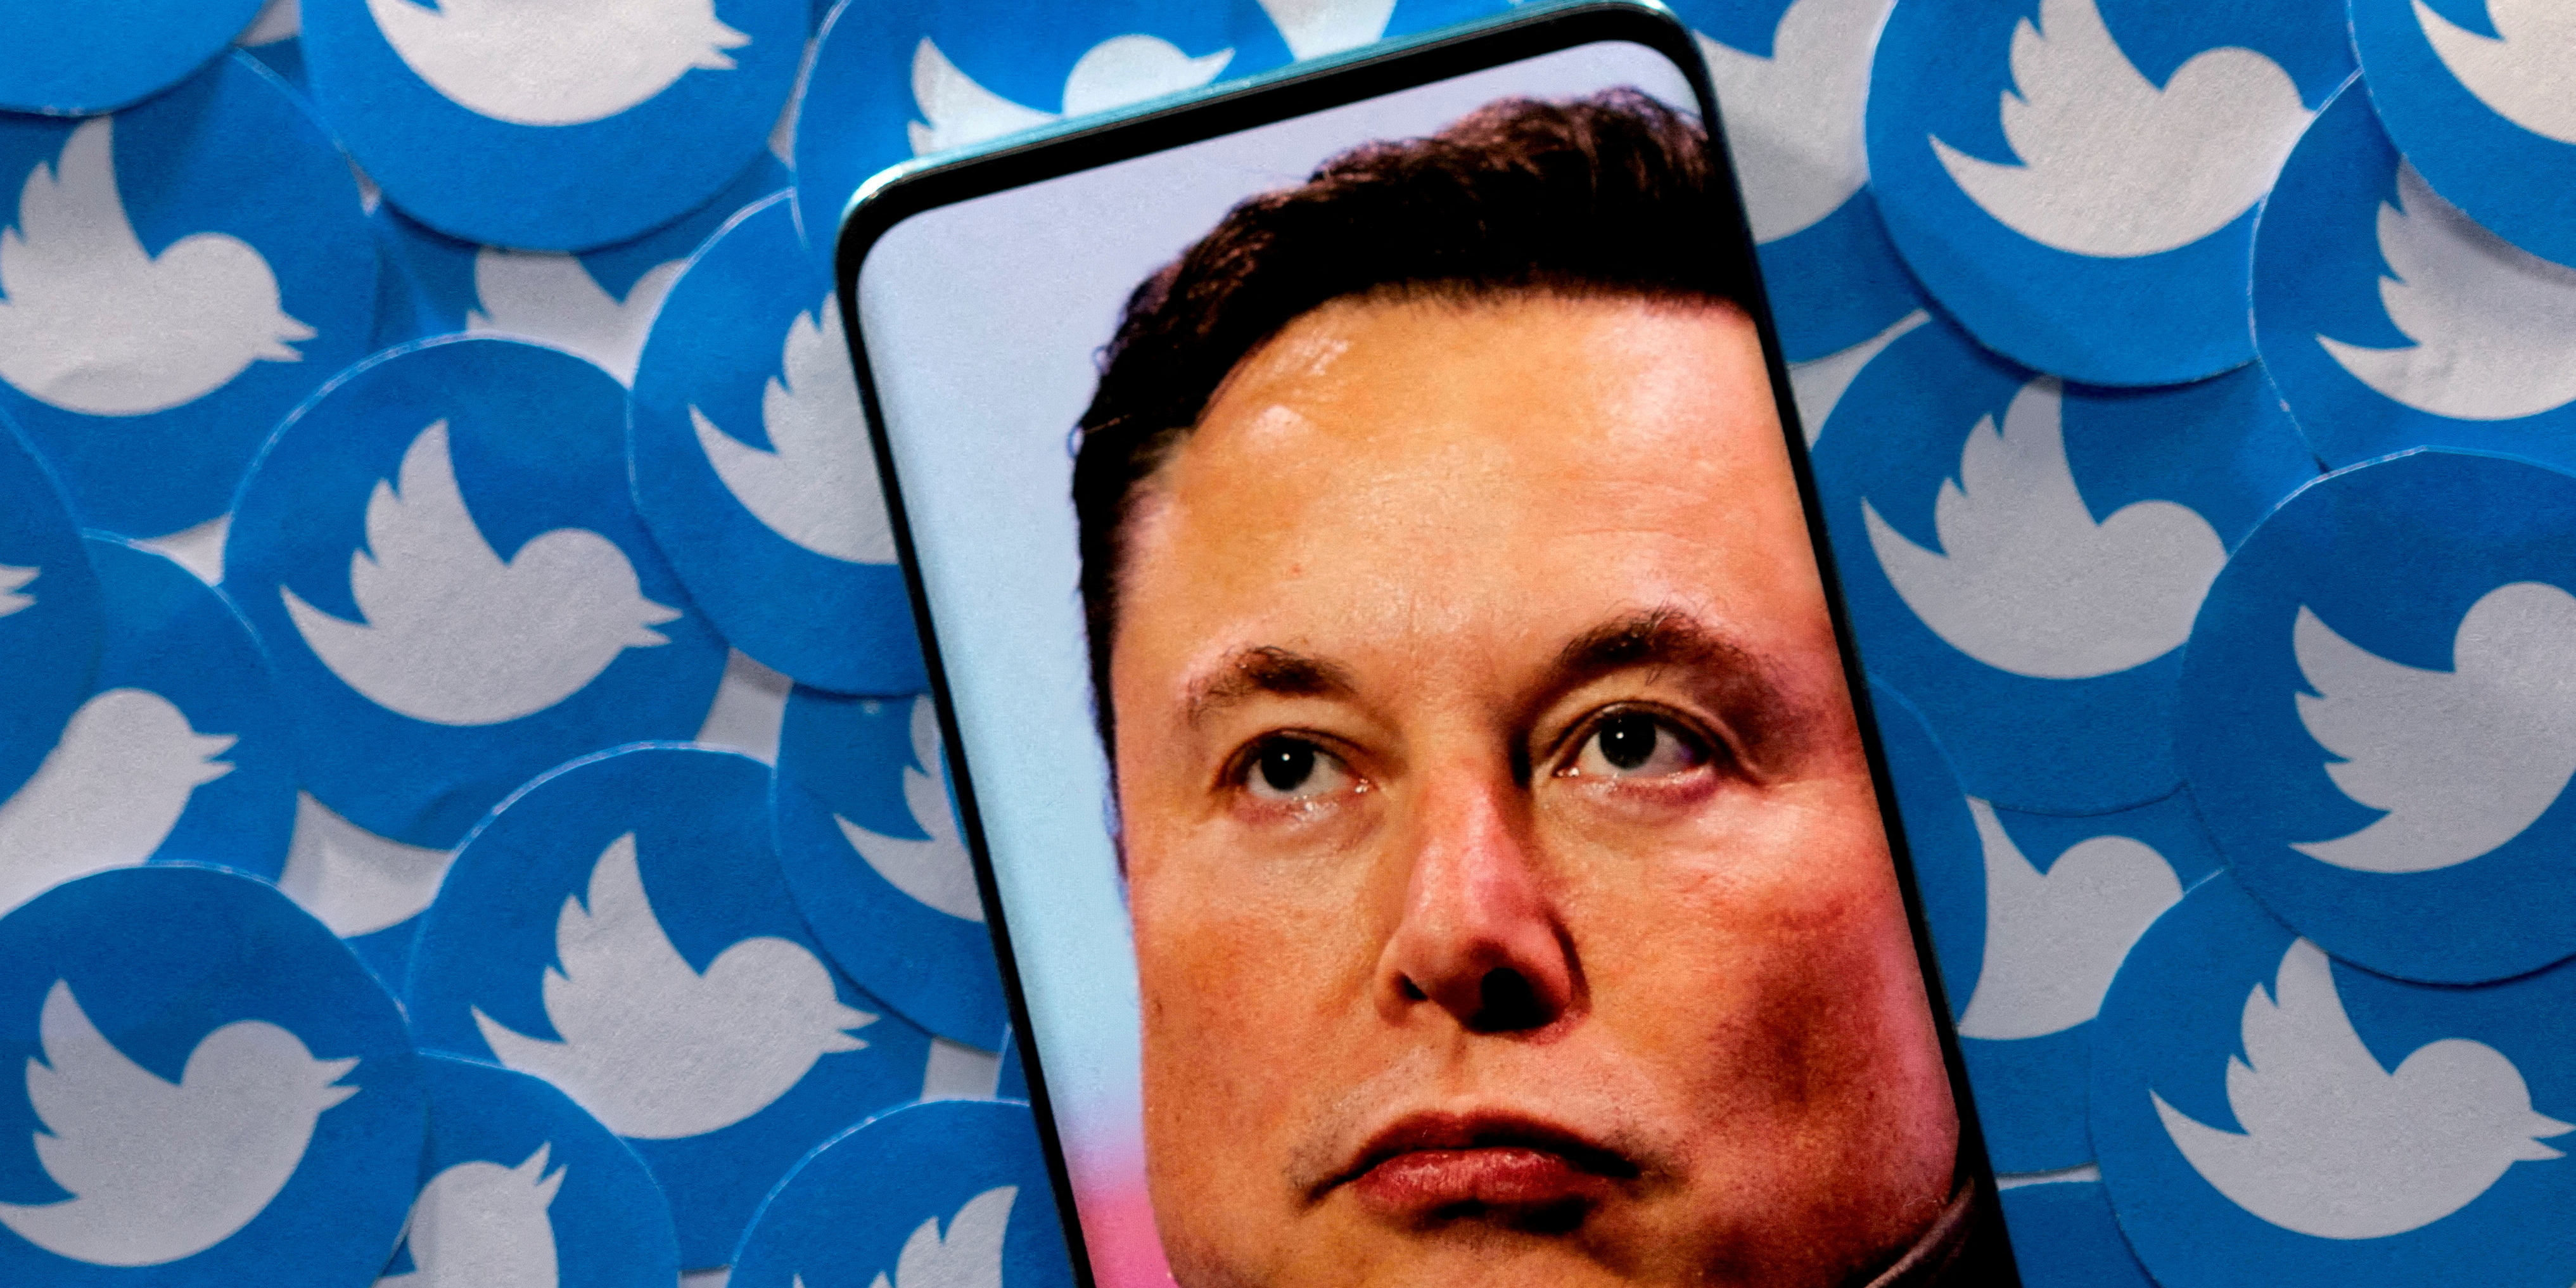 Les followers, un actif immatériel au coeur de la discorde entre Elon Musk et Twitter